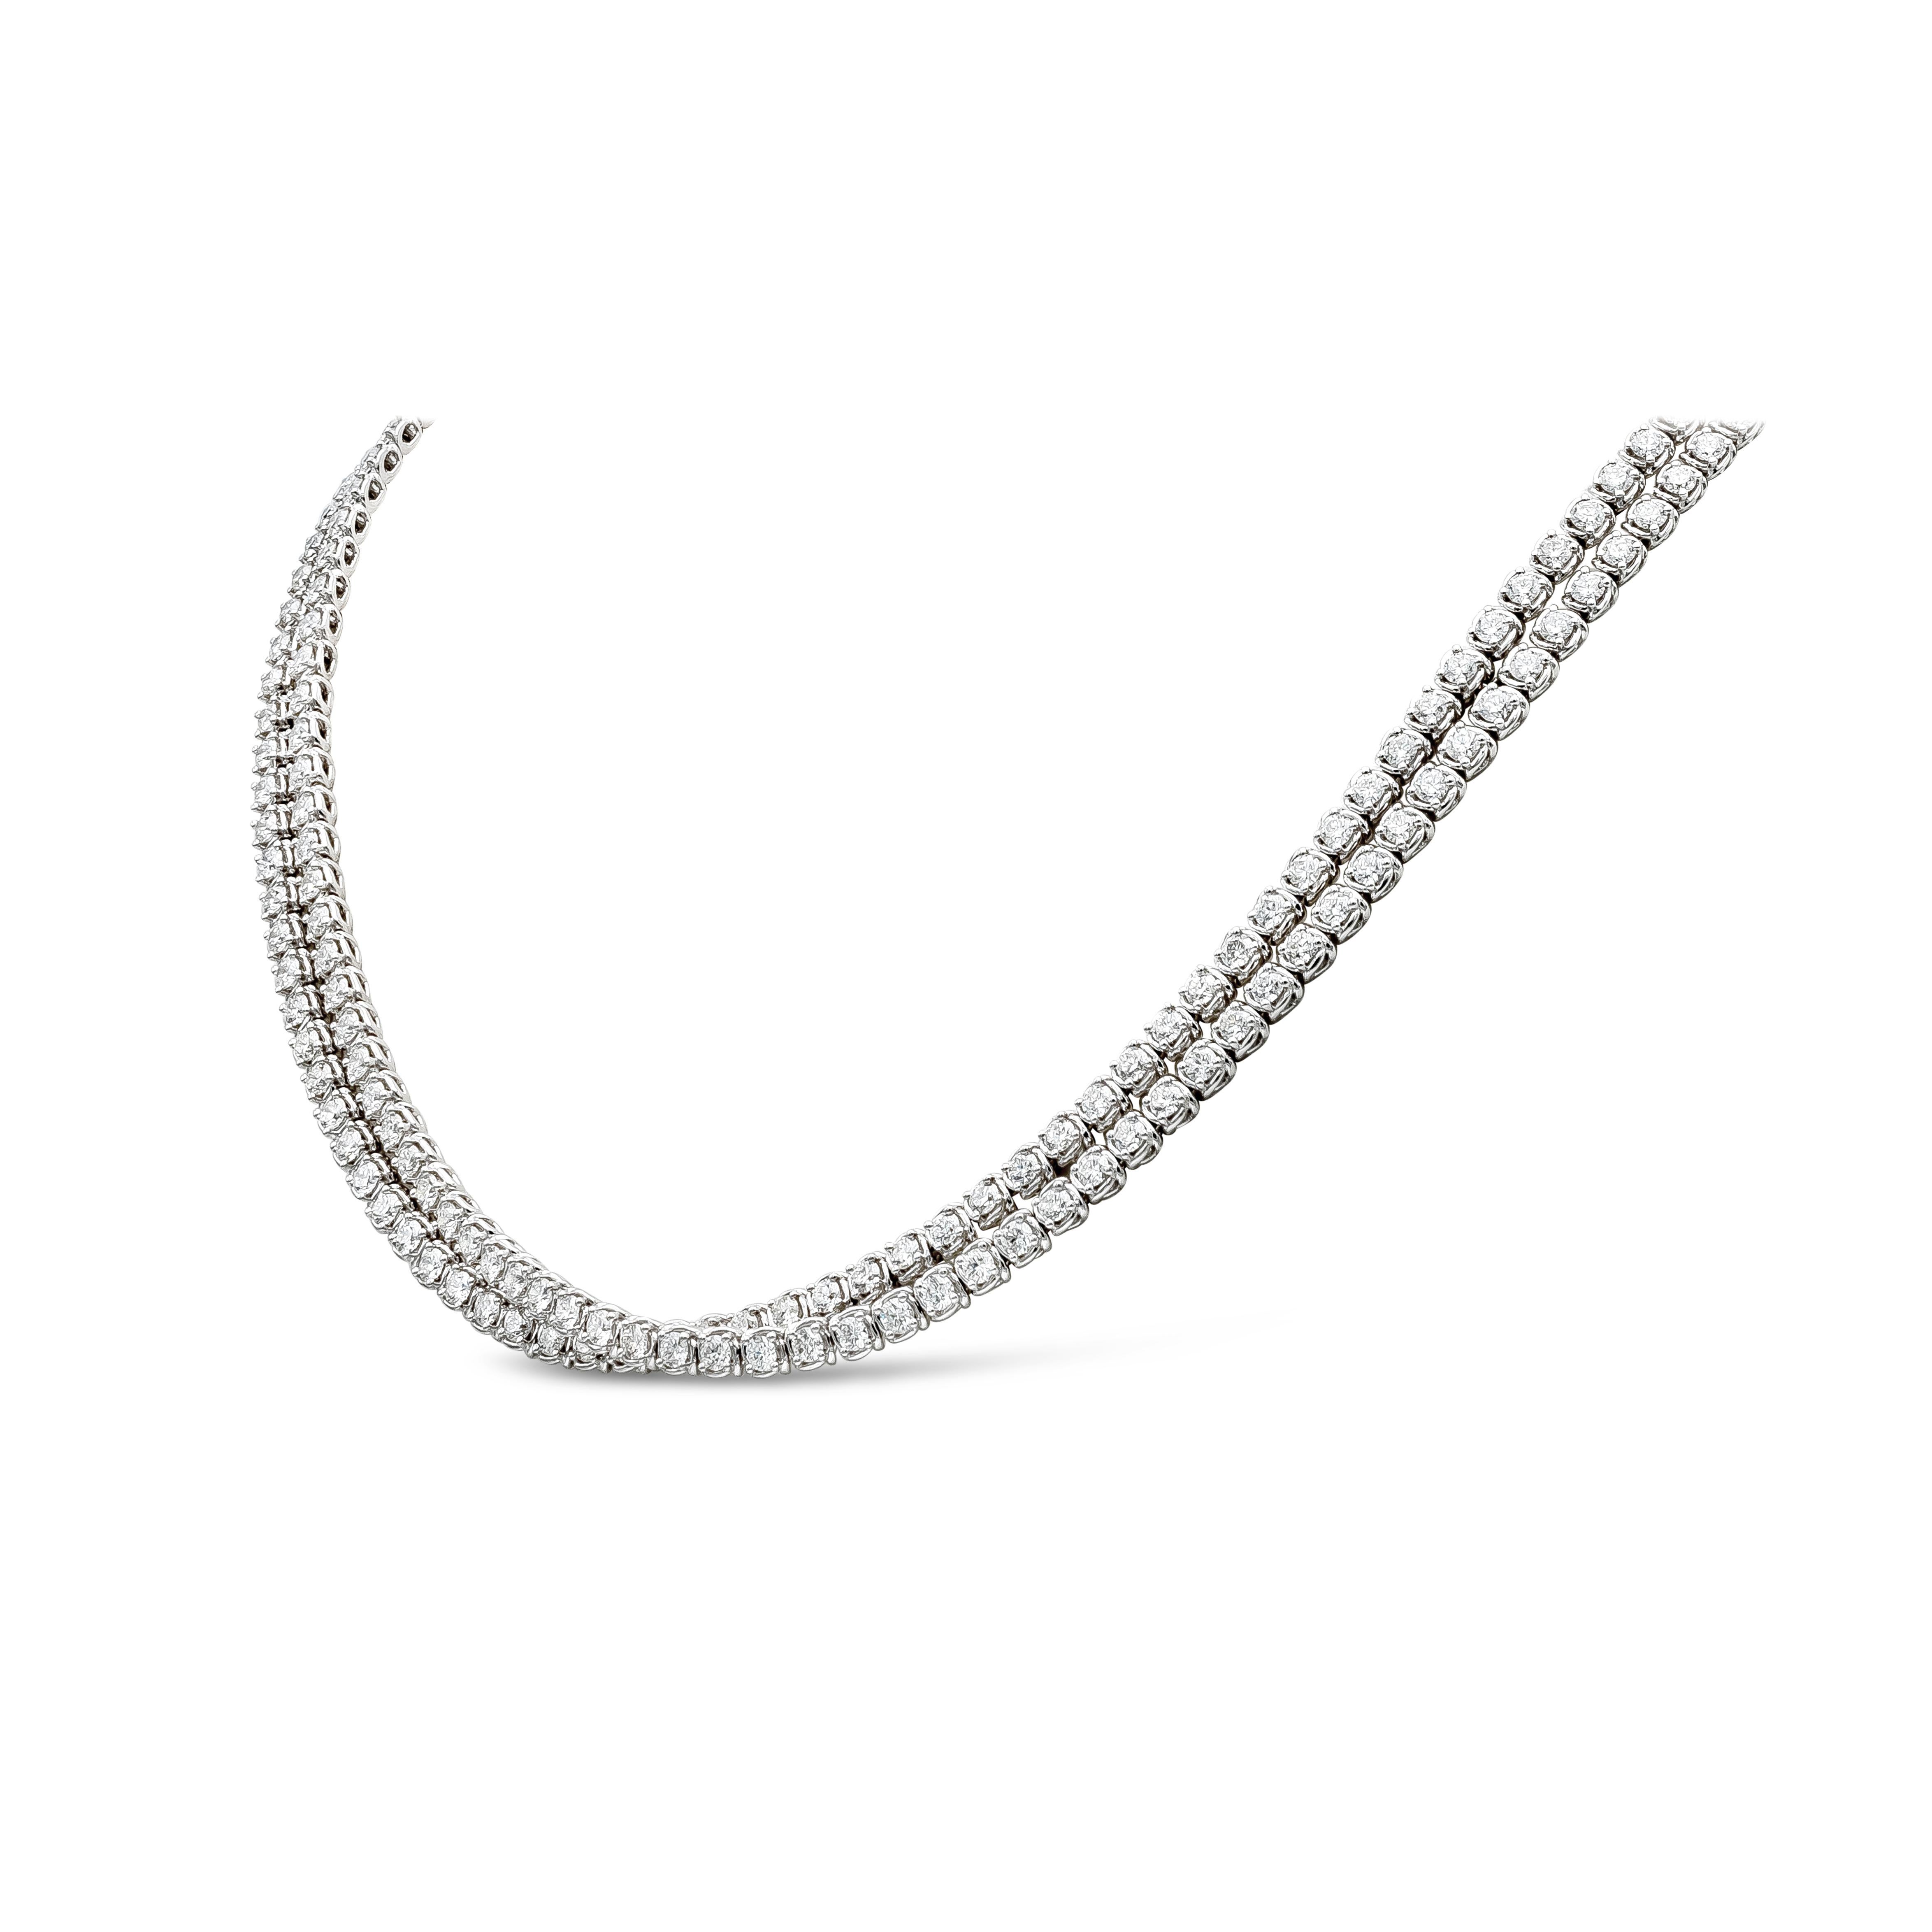 Un collier de tennis croisé à la mode et élégant mettant en valeur 238 diamants ronds de taille brillant. Les diamants pèsent 11,90 carats au total, de couleur F-G et de pureté VS-SI. Fabriqué en or blanc 18 carats. 16 pouces de longueur.

Roman